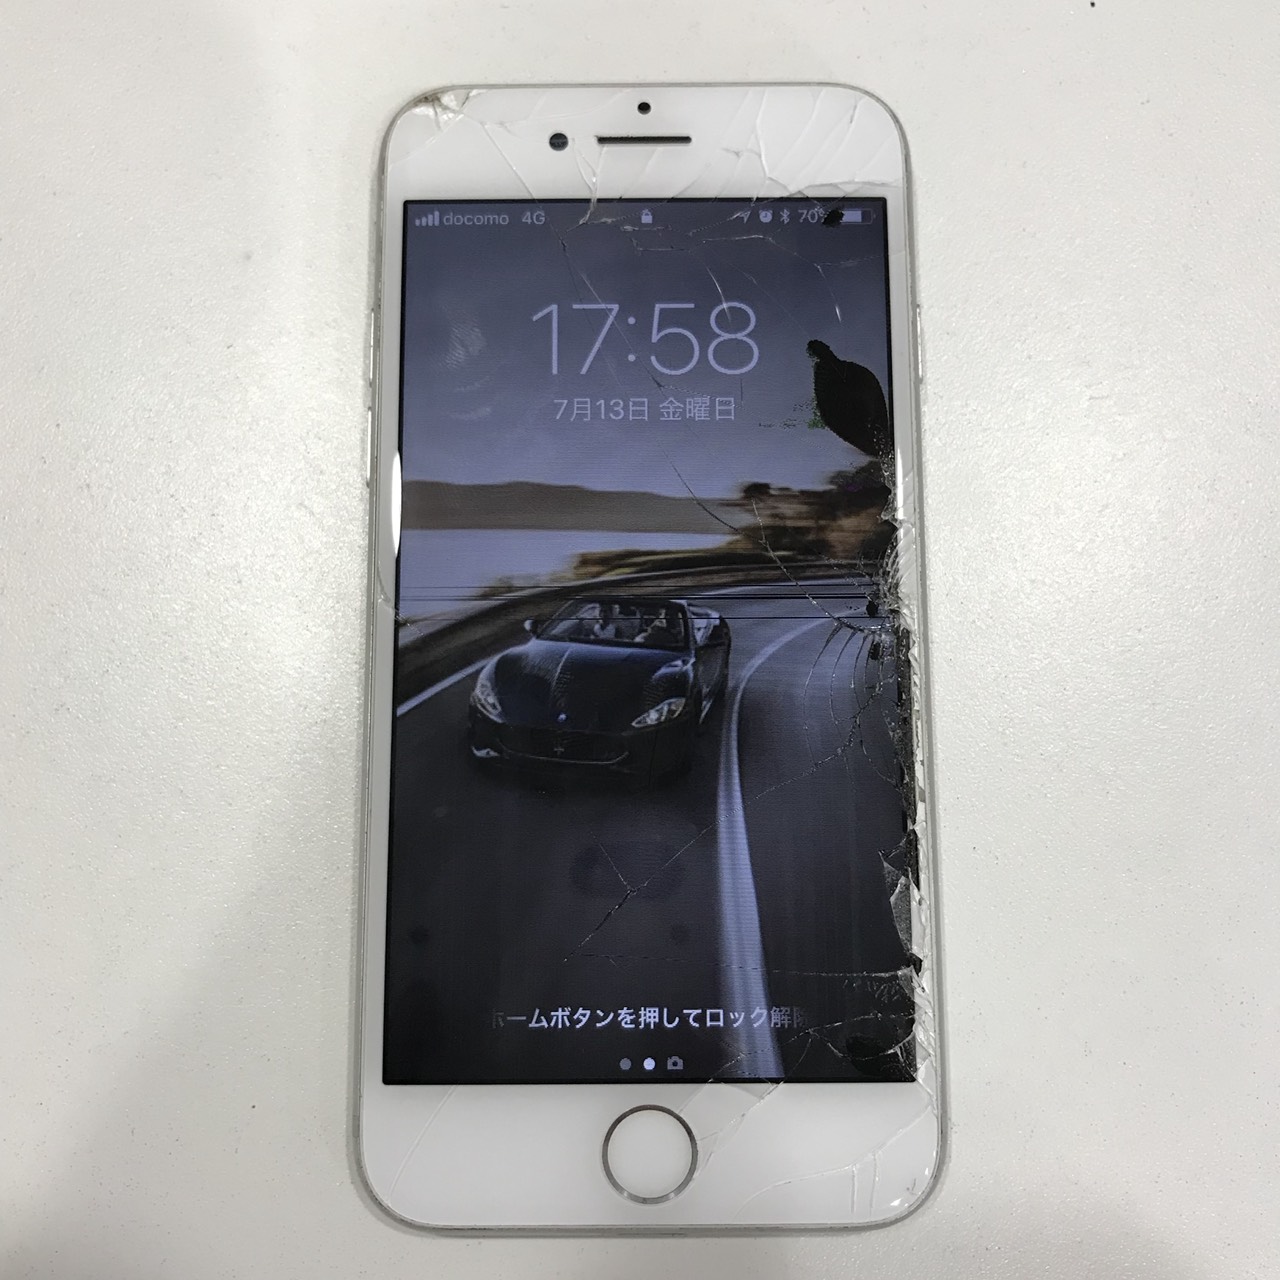 画面の右側に黒いシミができた タッチができない そんな時は 液晶破損の可能性アリ Iphone修理 小倉 スマップル北九州小倉店へお任せ下さい Iphone修理を北九州でお探しの方ならスマップル北九州小倉店